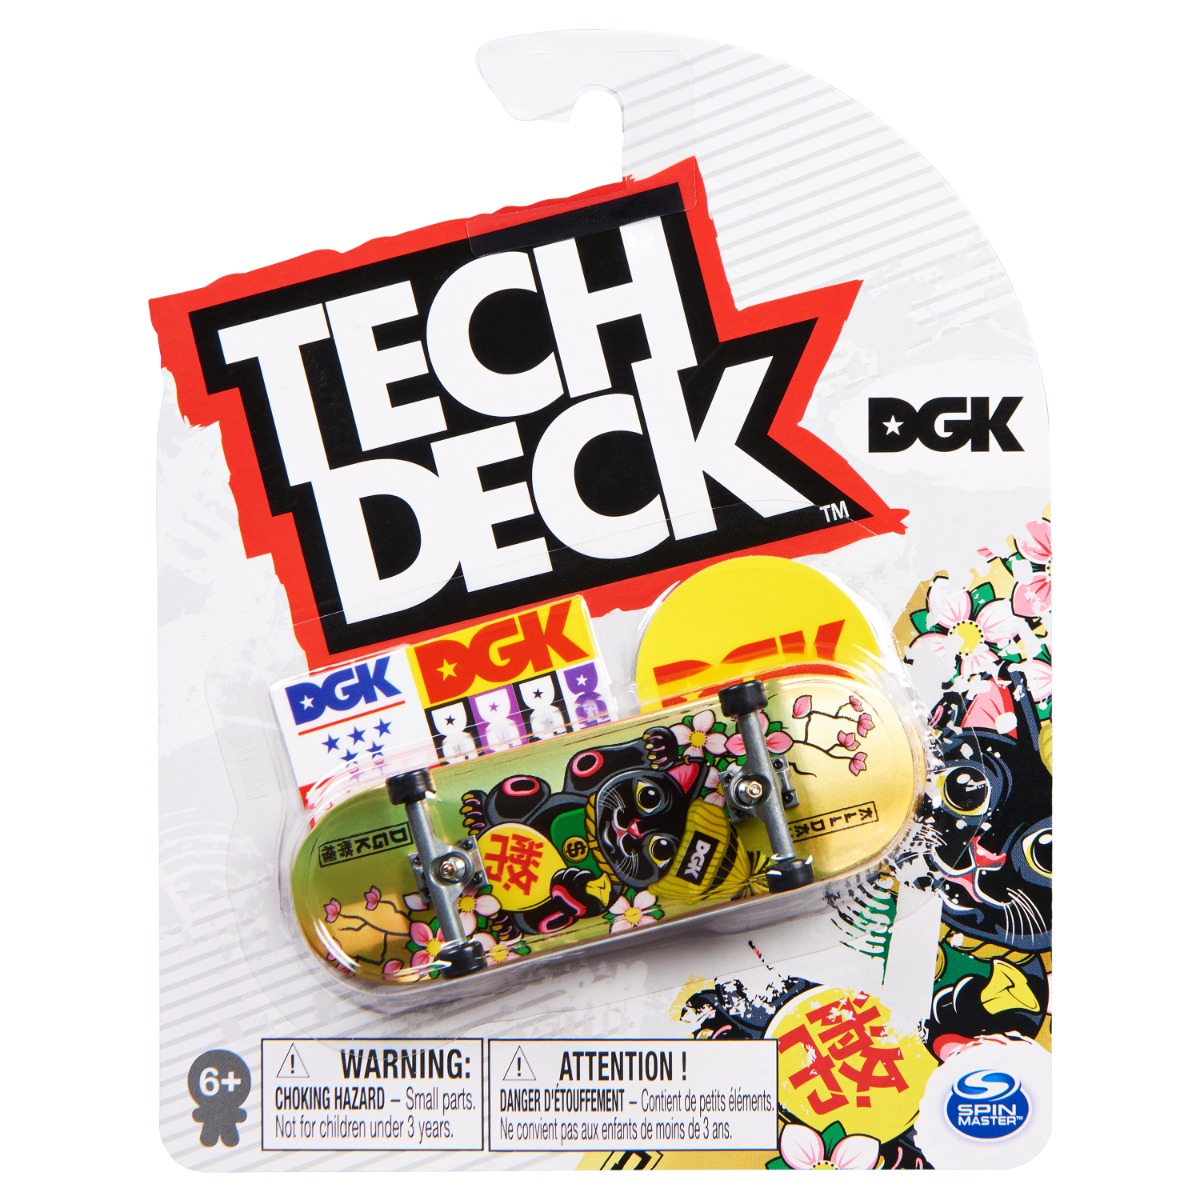 Mini placa skateboard Tech Deck, DGK, 20141353